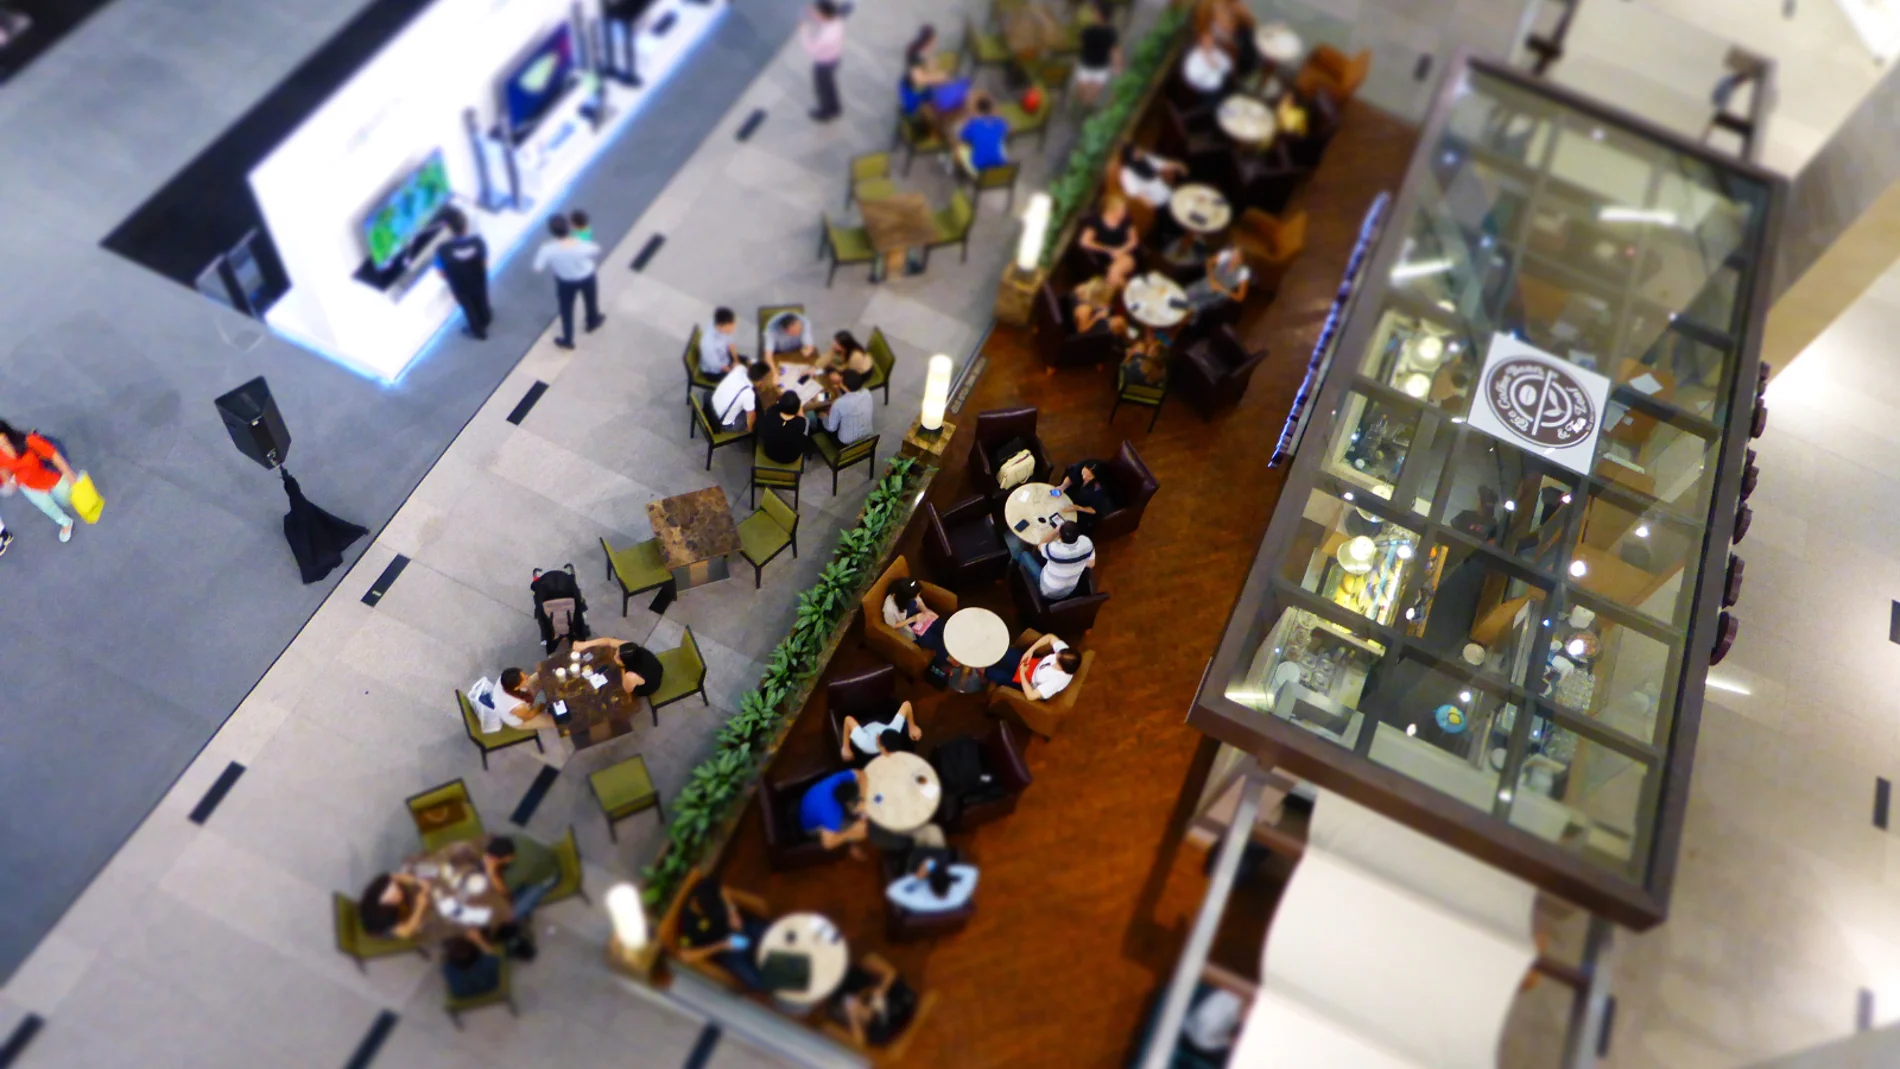 ¿Por qué los centros comerciales tienen el área de comida en el último piso? se trata de una táctica psicológica